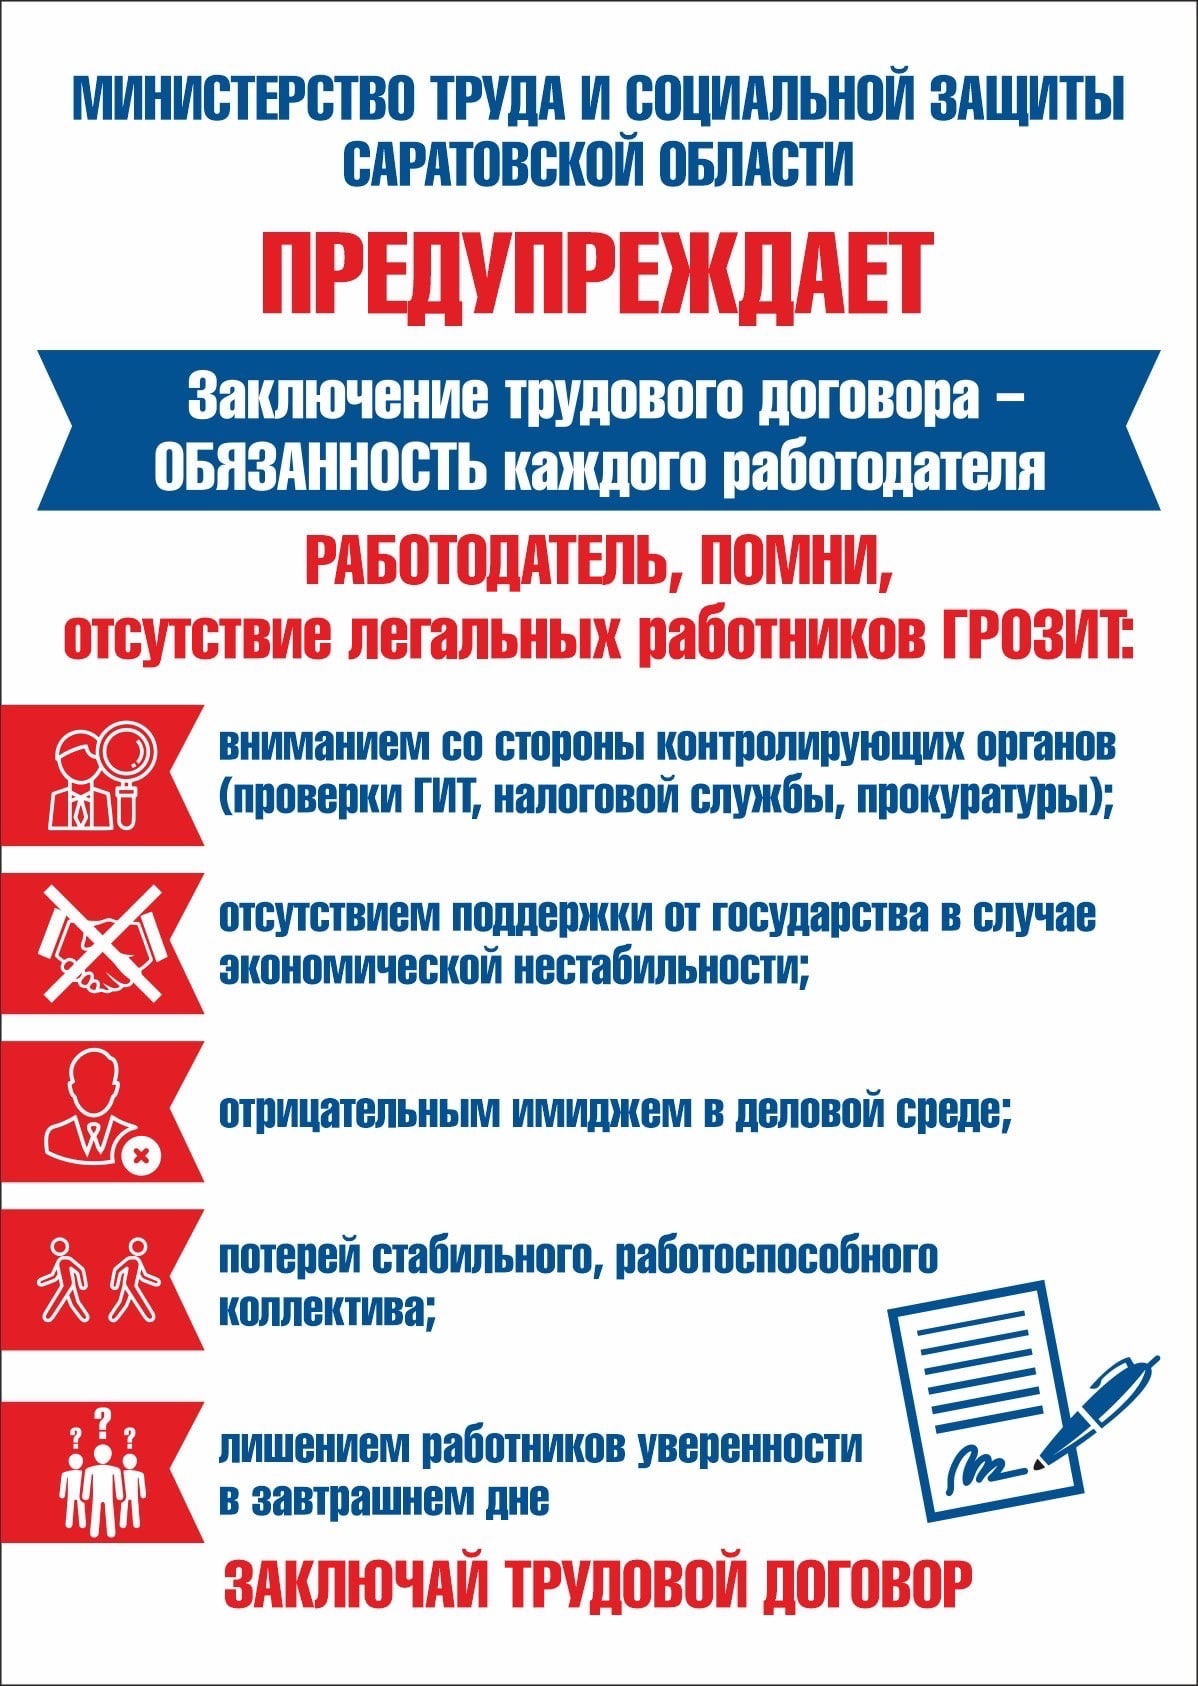 В Саратовской области проводится месячник противодействия нелегальной занятости